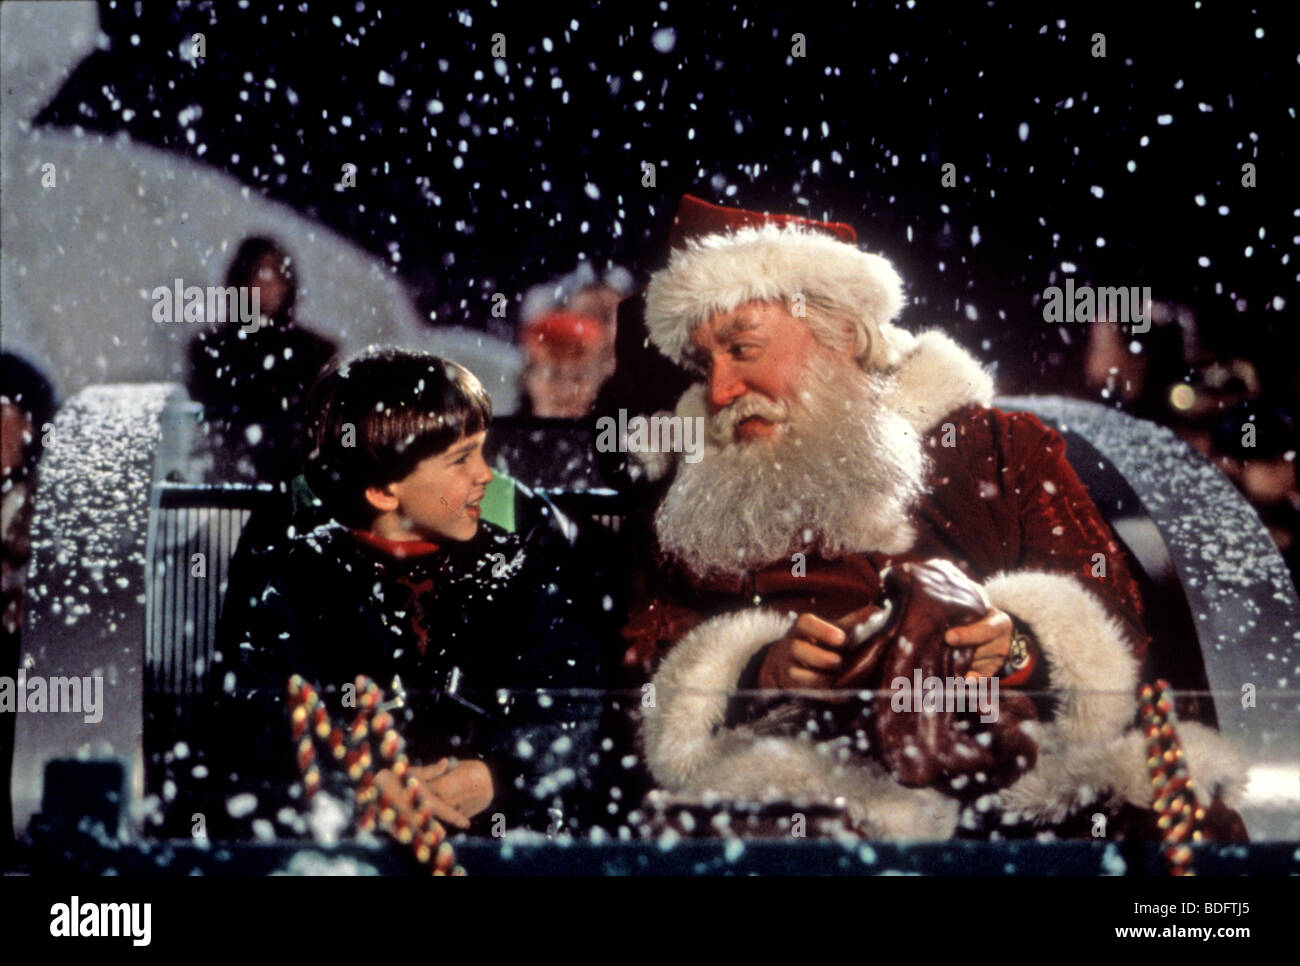 Immagine Babbo Natale 94.Il Babbo Natale 1994 Buena Vista Film Di Walt Disney Con Tim Allen Foto Stock Alamy